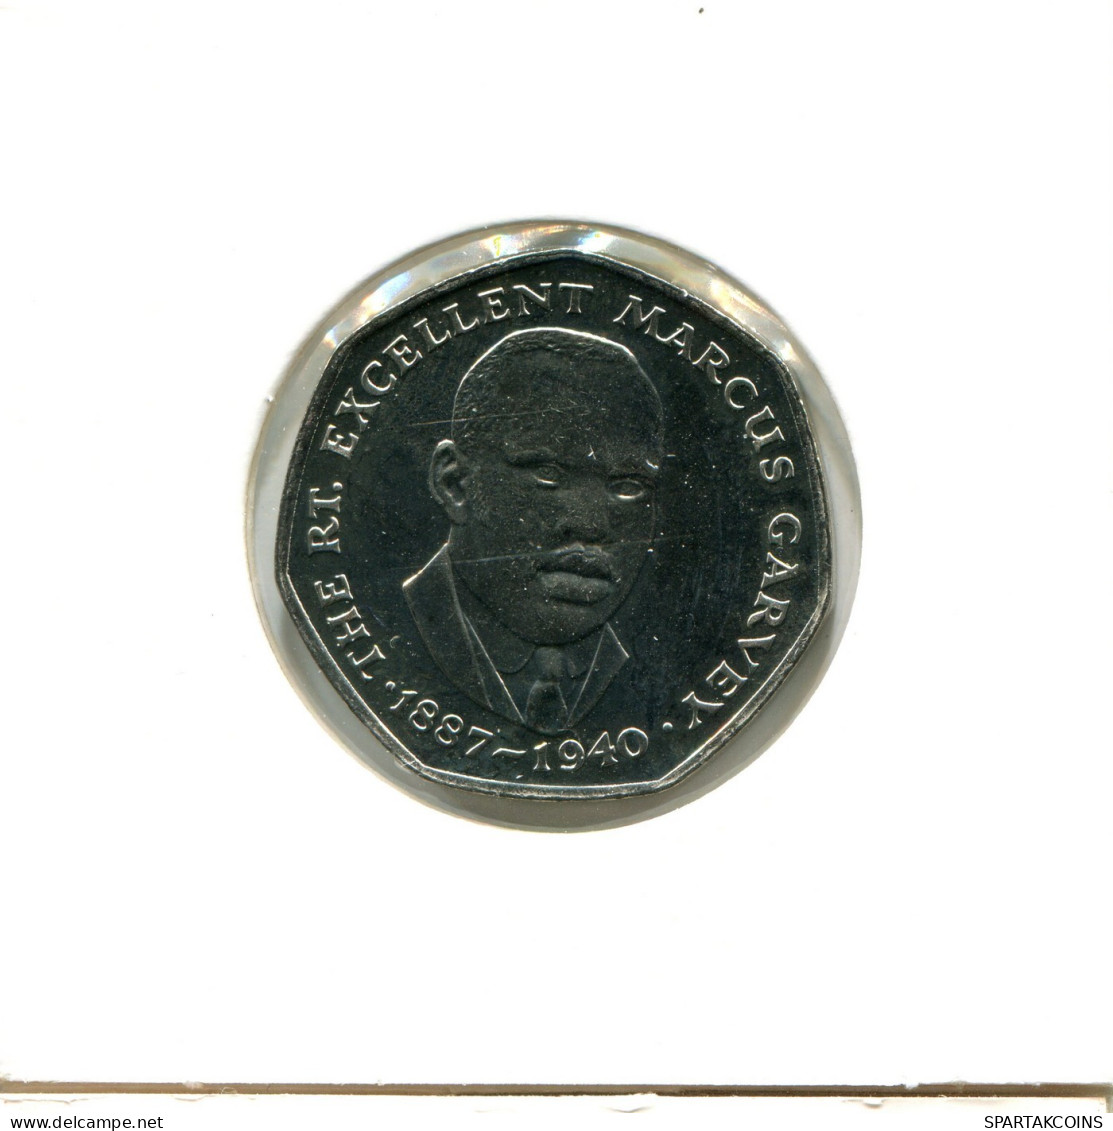 25 CENTS 1993 JAMAICA Moneda #AX865.E.A - Jamaique